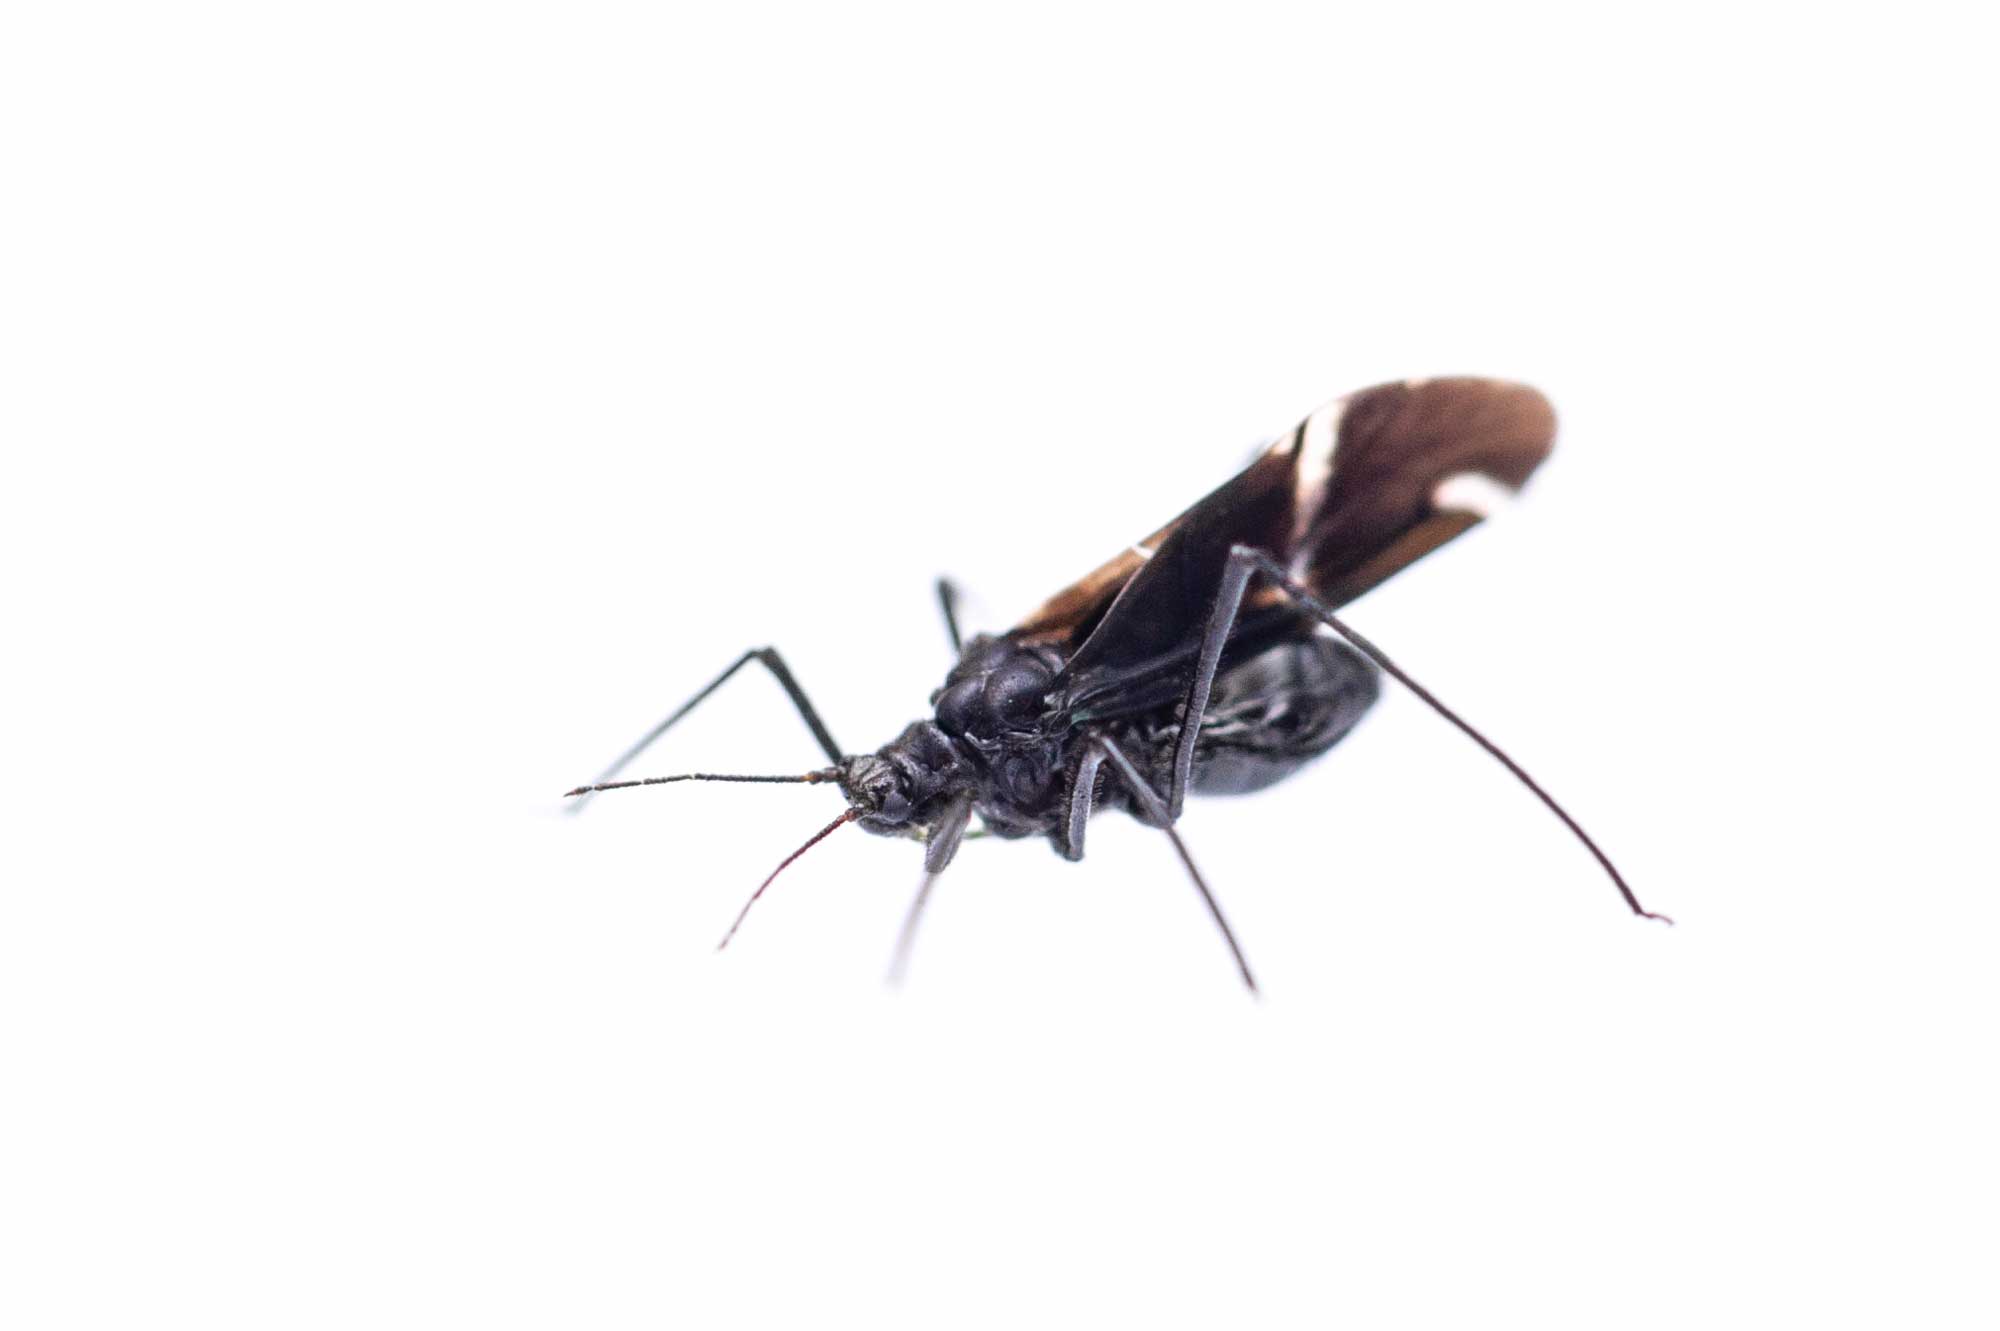 クリオオアブラムシ 虫の写真と生態なら昆虫写真図鑑 ムシミル